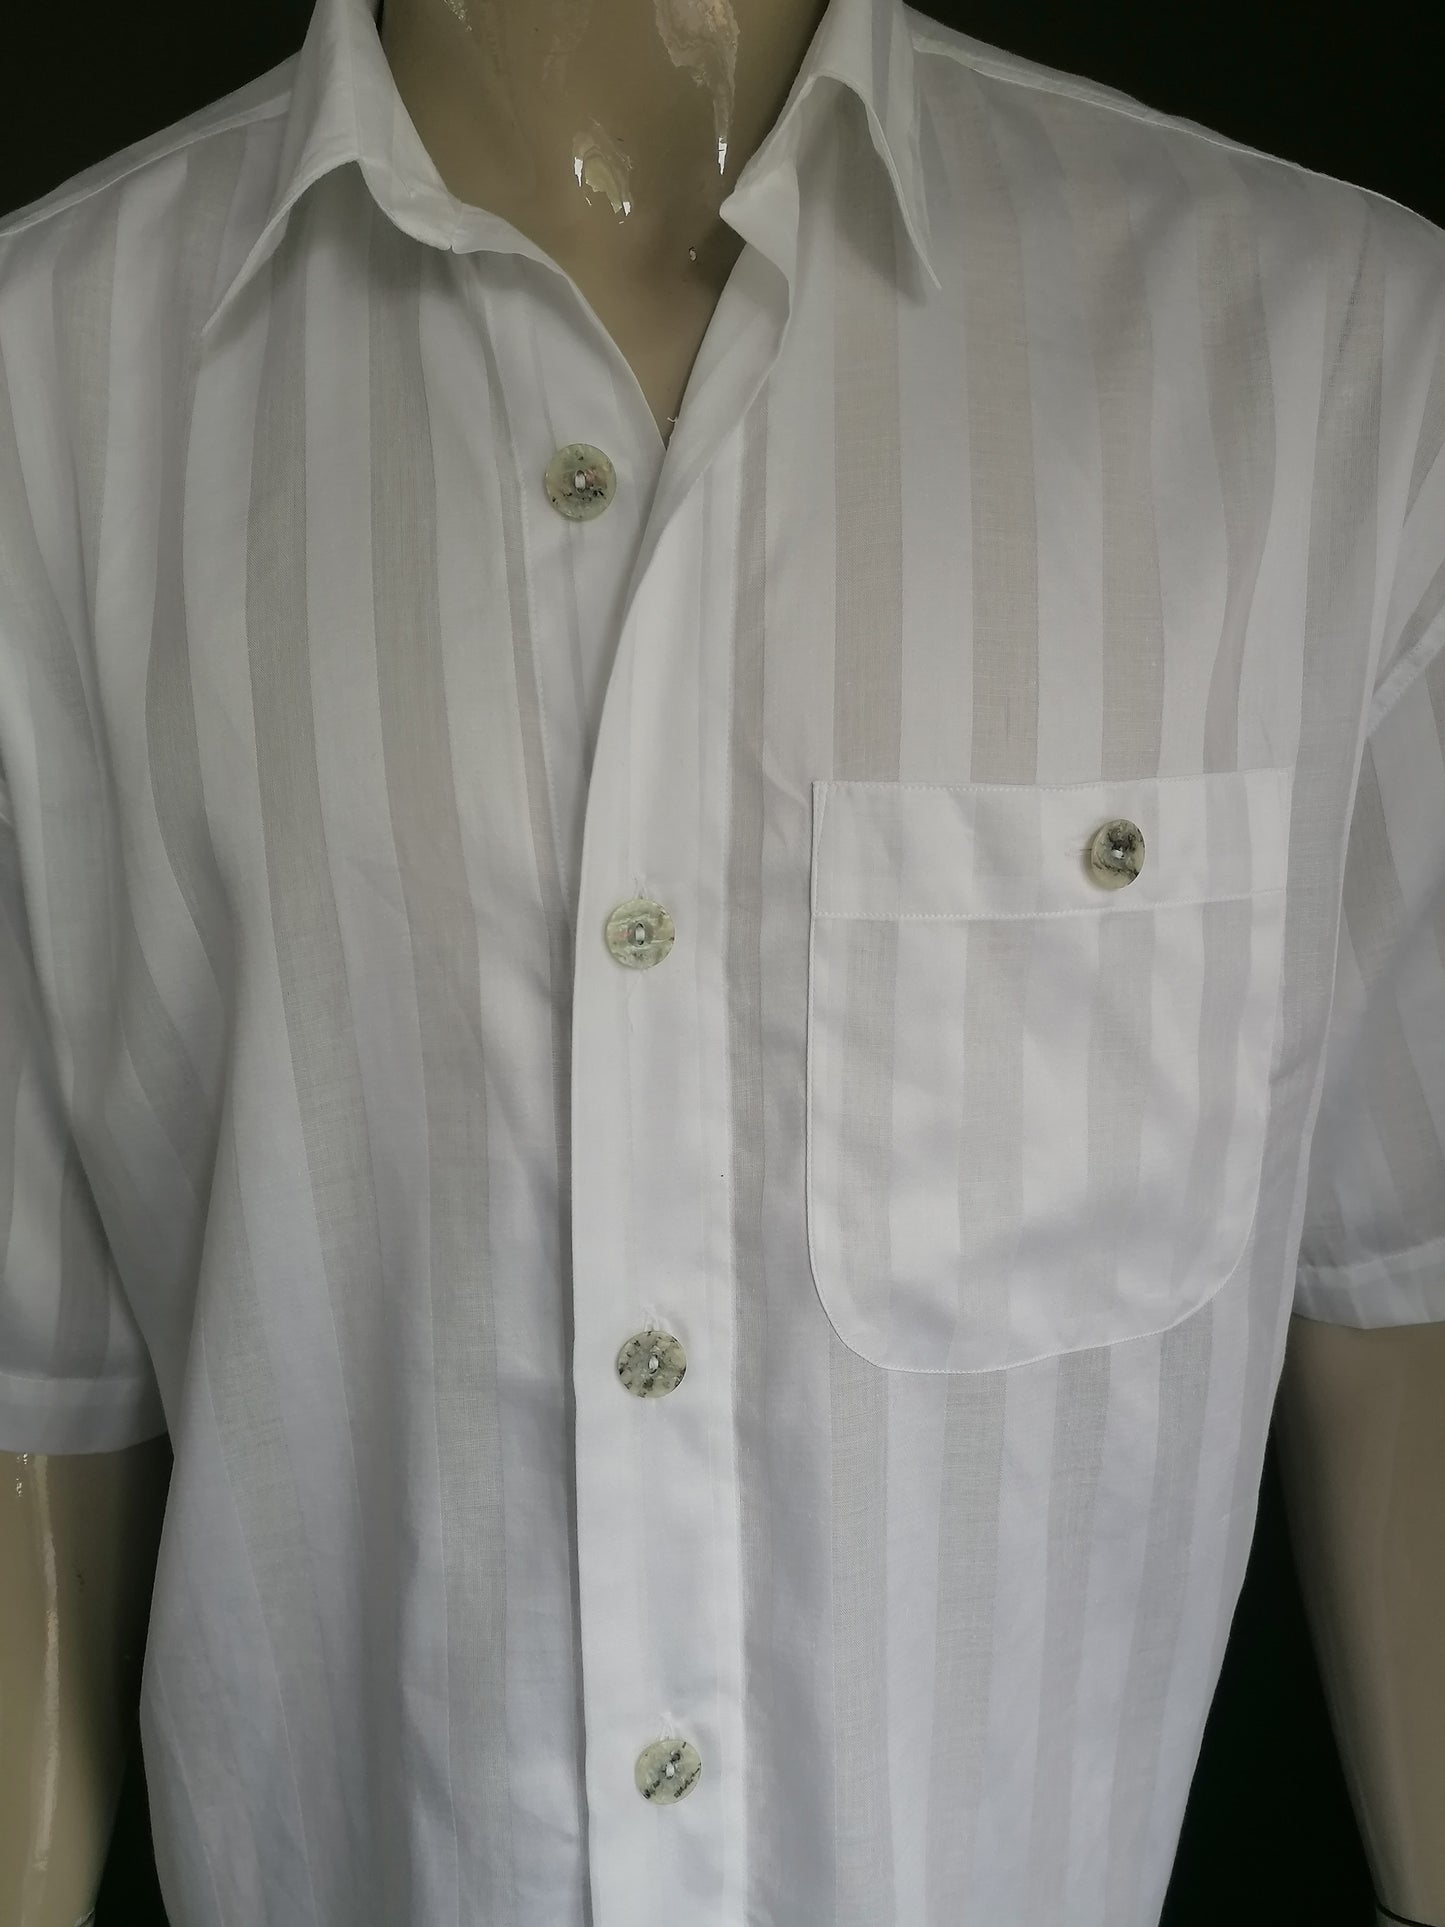 Chemise Signum vintage à manches courtes et boutons plus grands. Motif à rayures blanches. Taille xl.